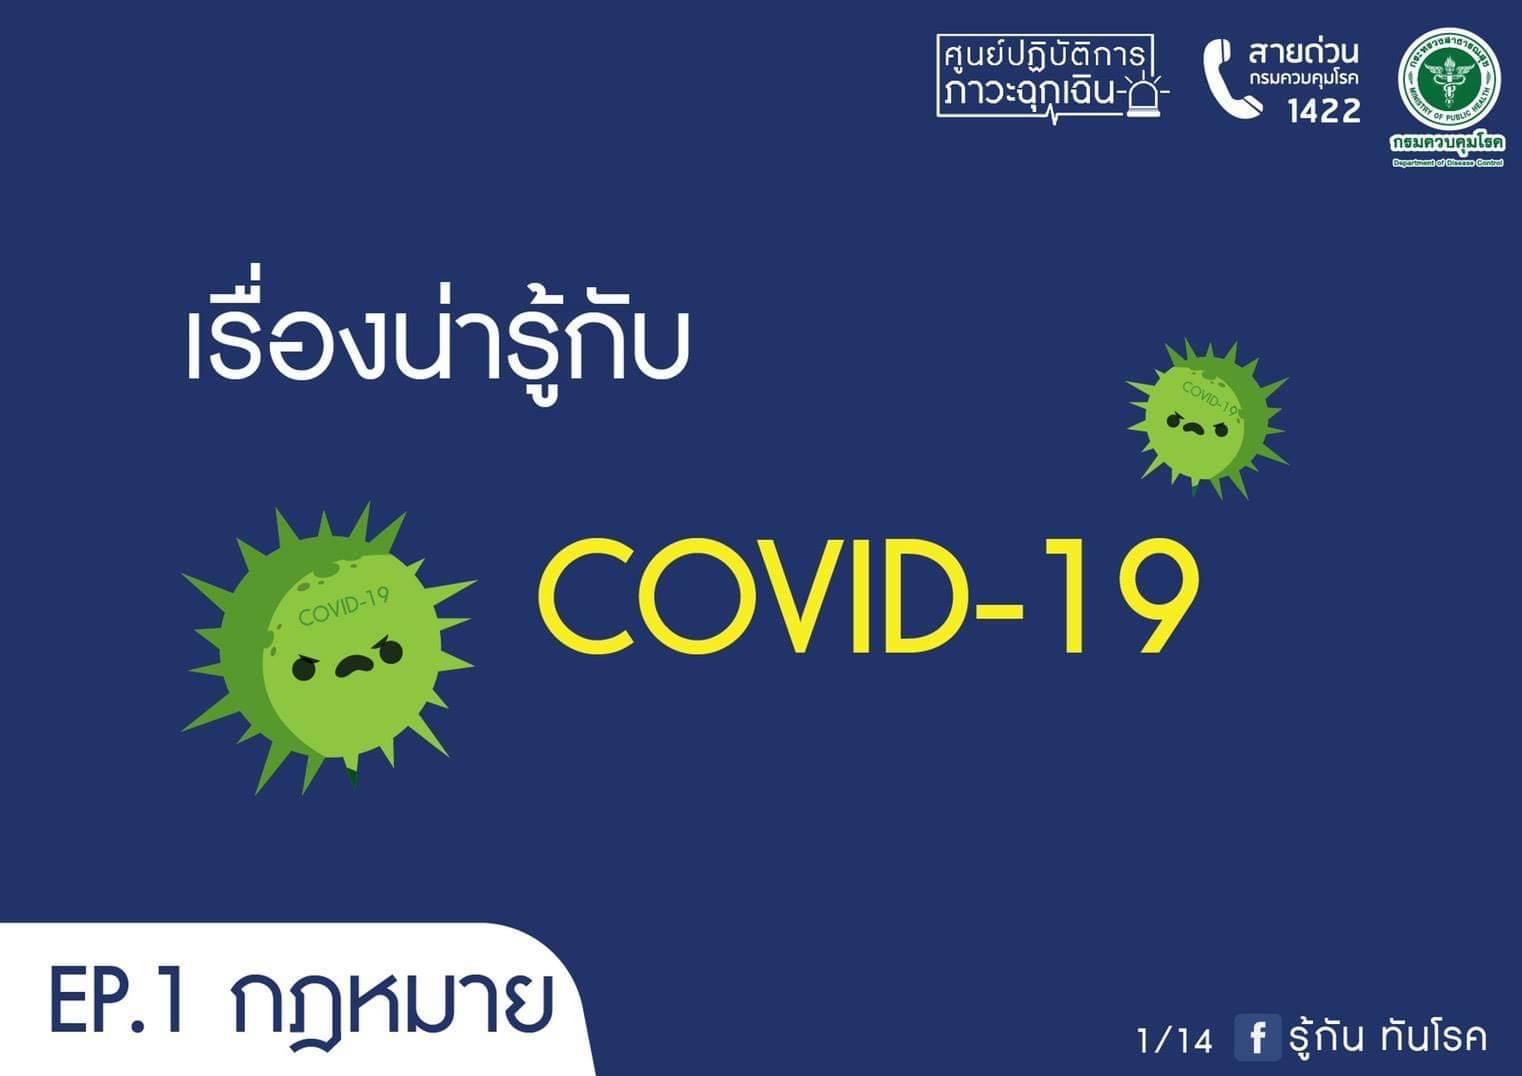  “ไวรัสโควิด 19 (Covid-19)”